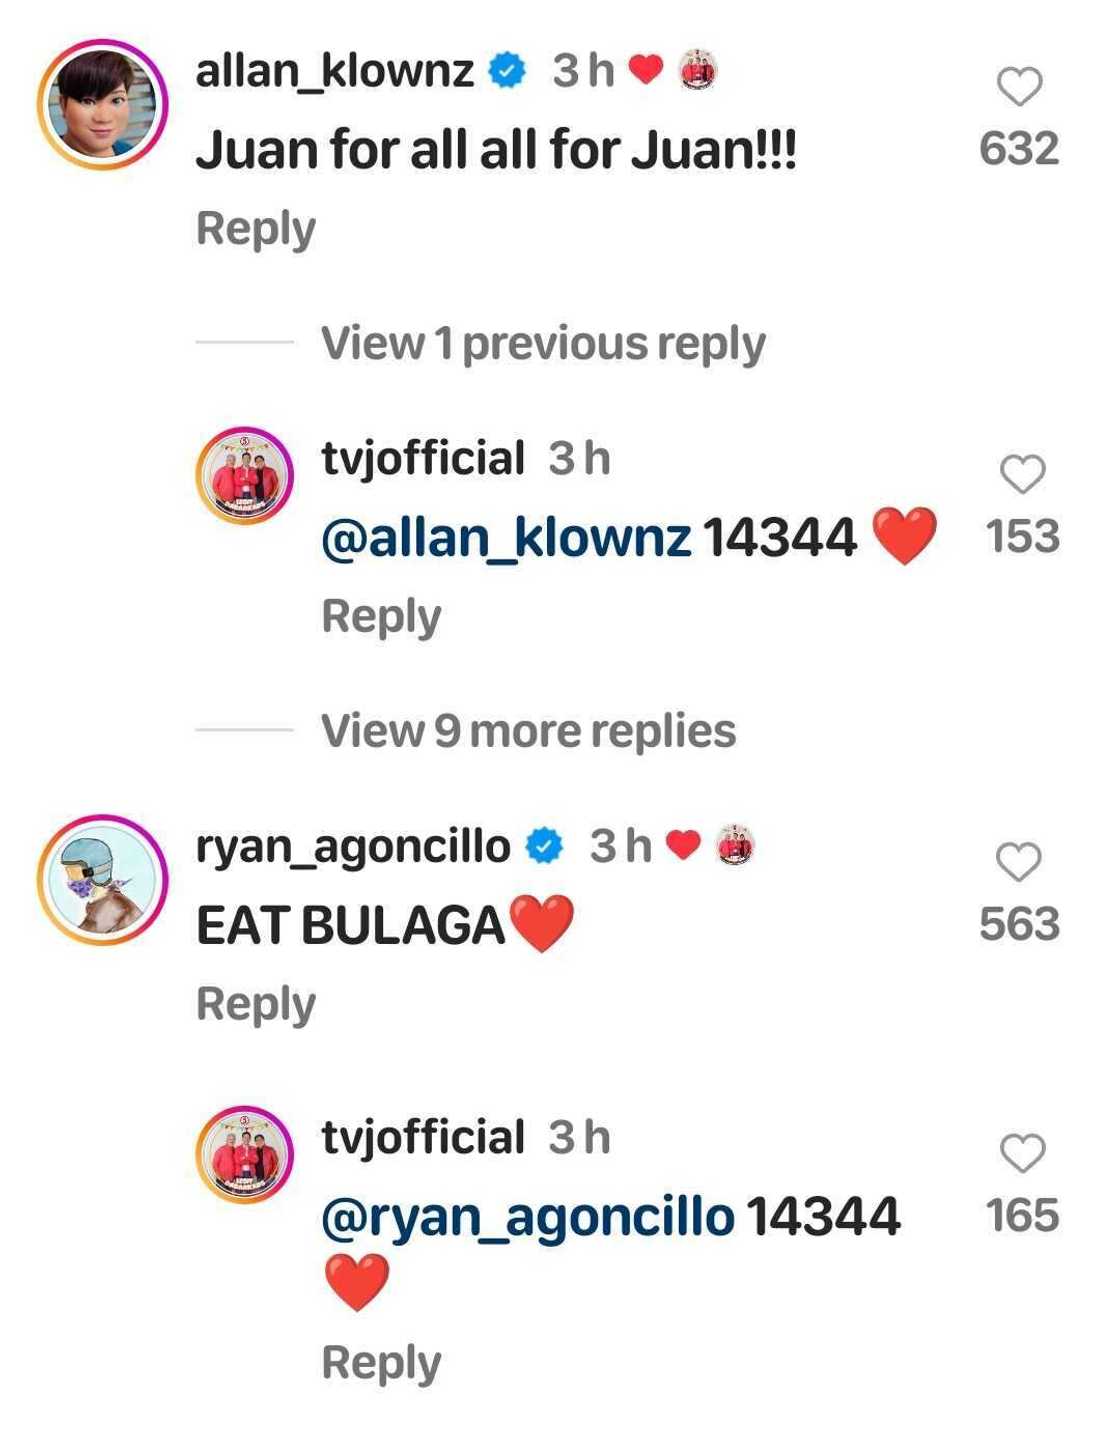 Allan K at co-hosts, positibong nag-react sa new post ng TVJ kung saan binanggit ang “Eat Bulaga”